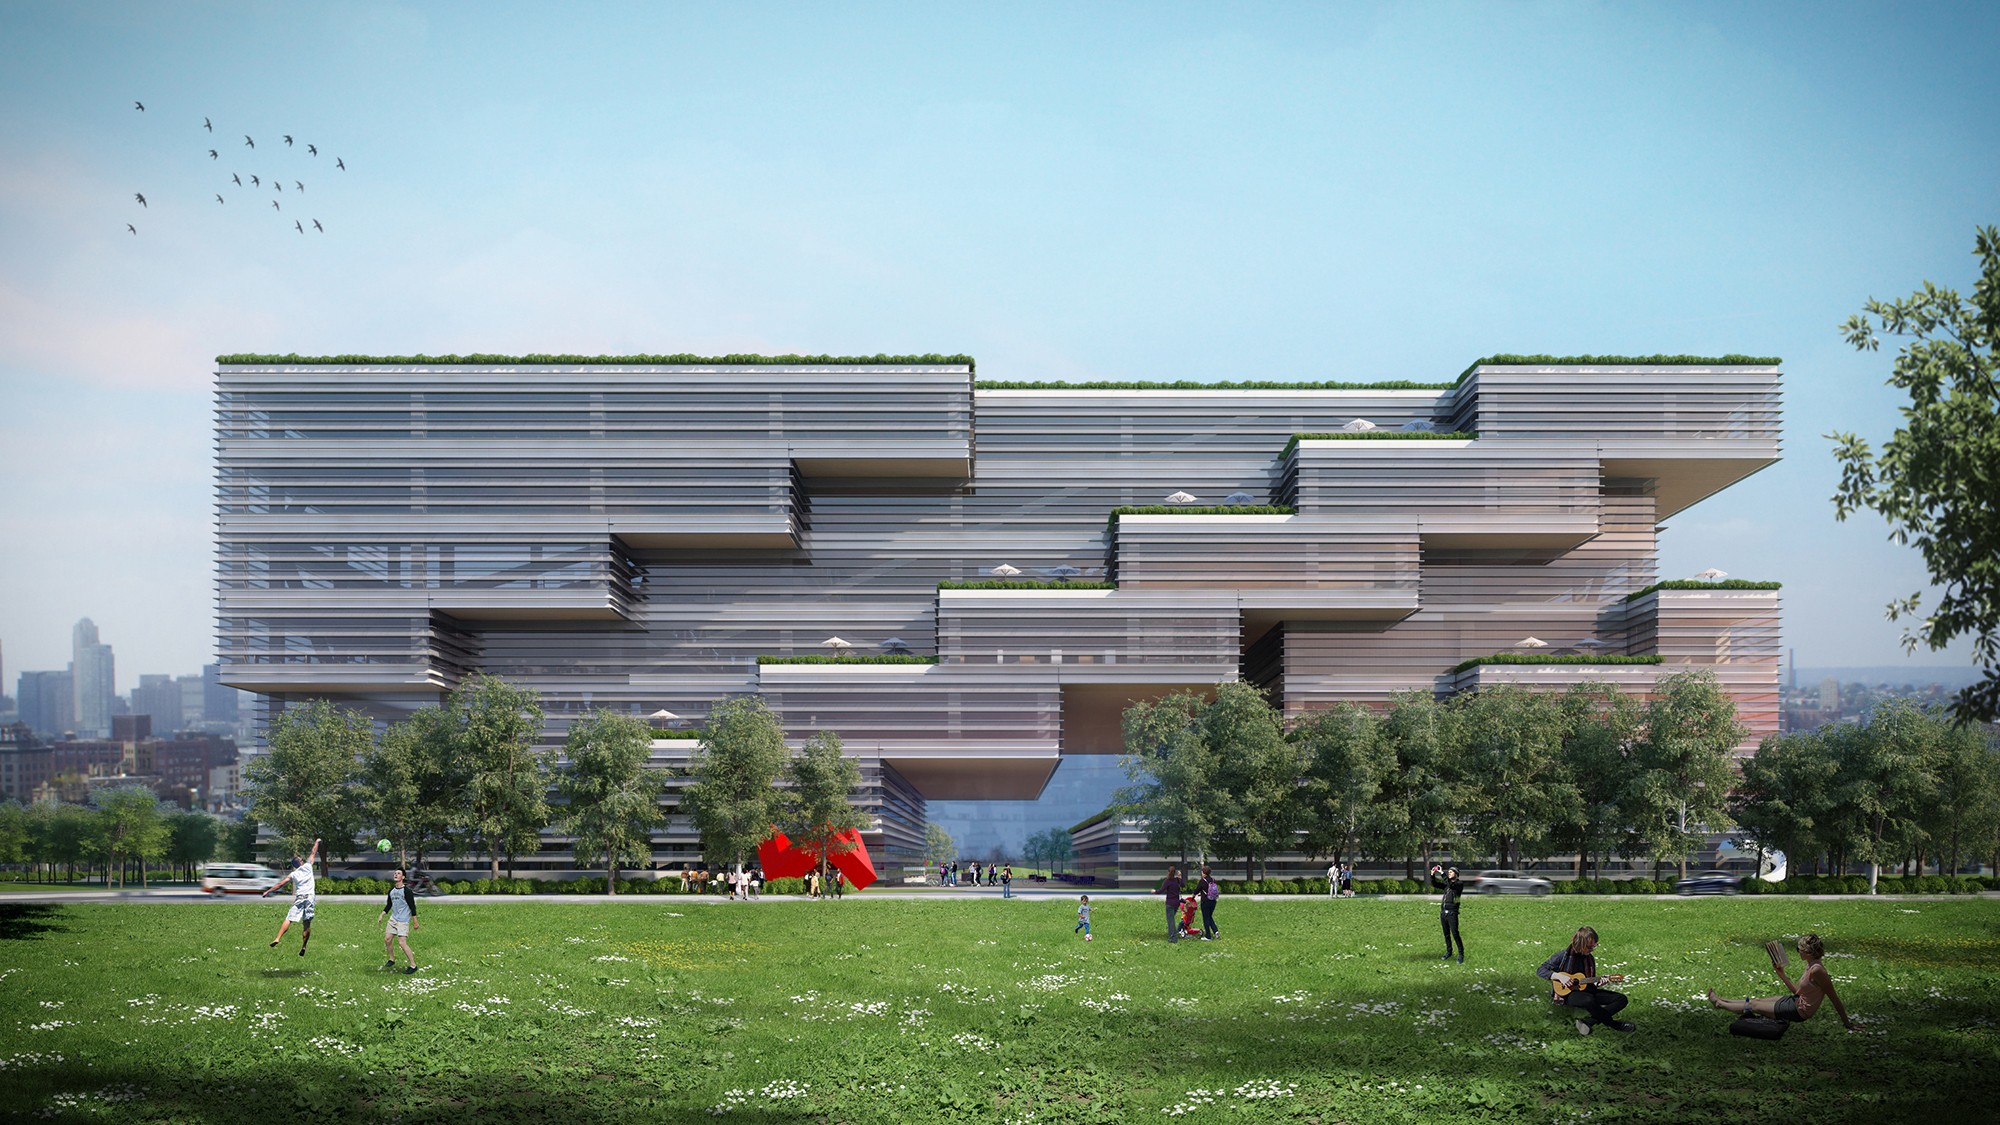 桃園市立圖書館總館新建工程競圖 第五名: Q-Lab 曾永信建築師事務所